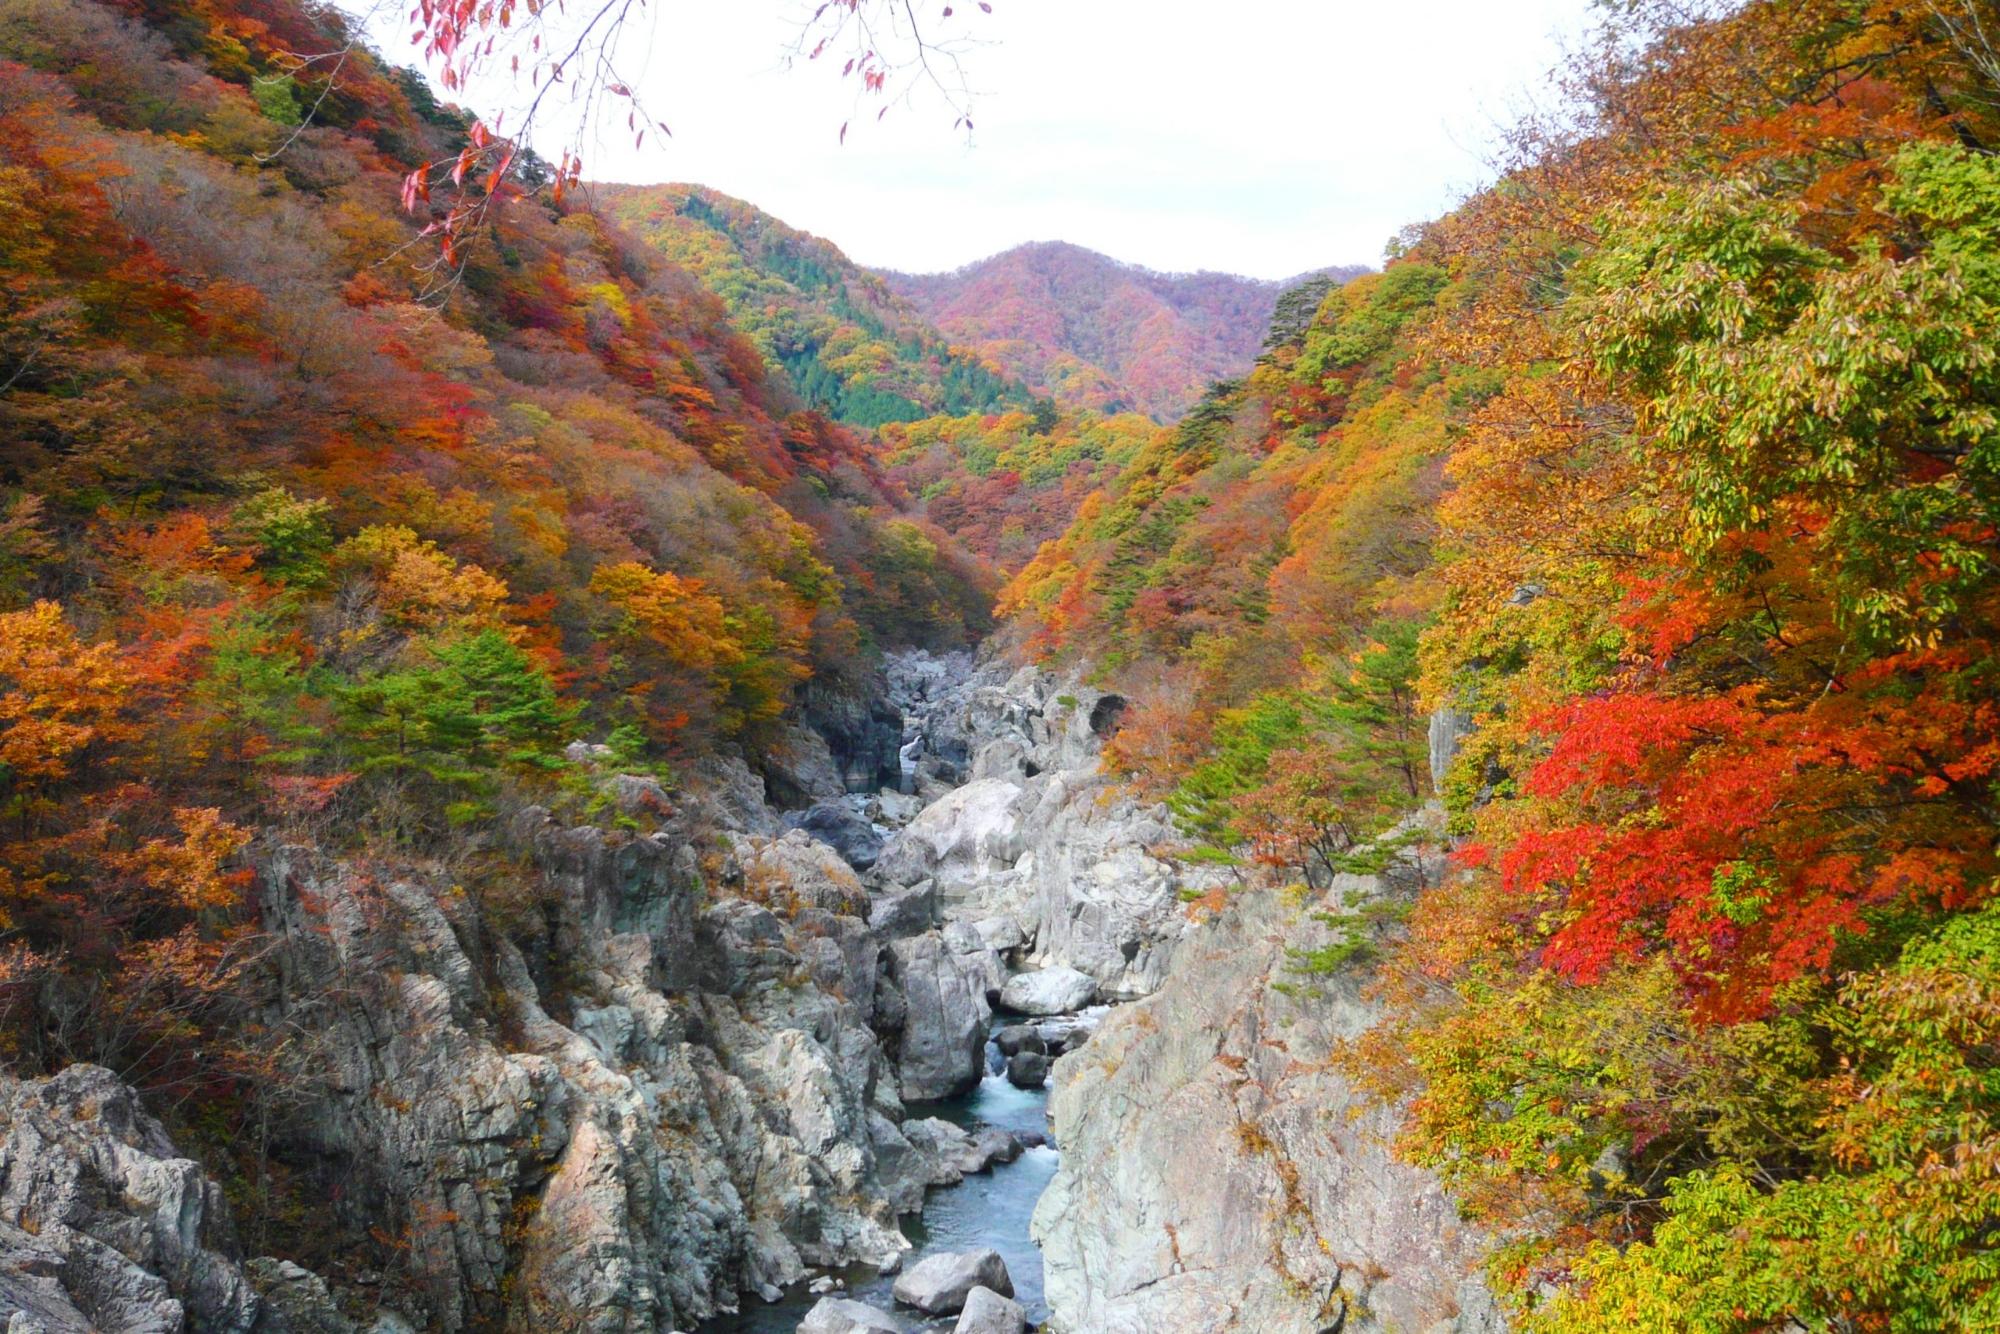 渓谷沿いには緑やオレンジ、赤に染まった樹木が並んでいる龍王峡の写真